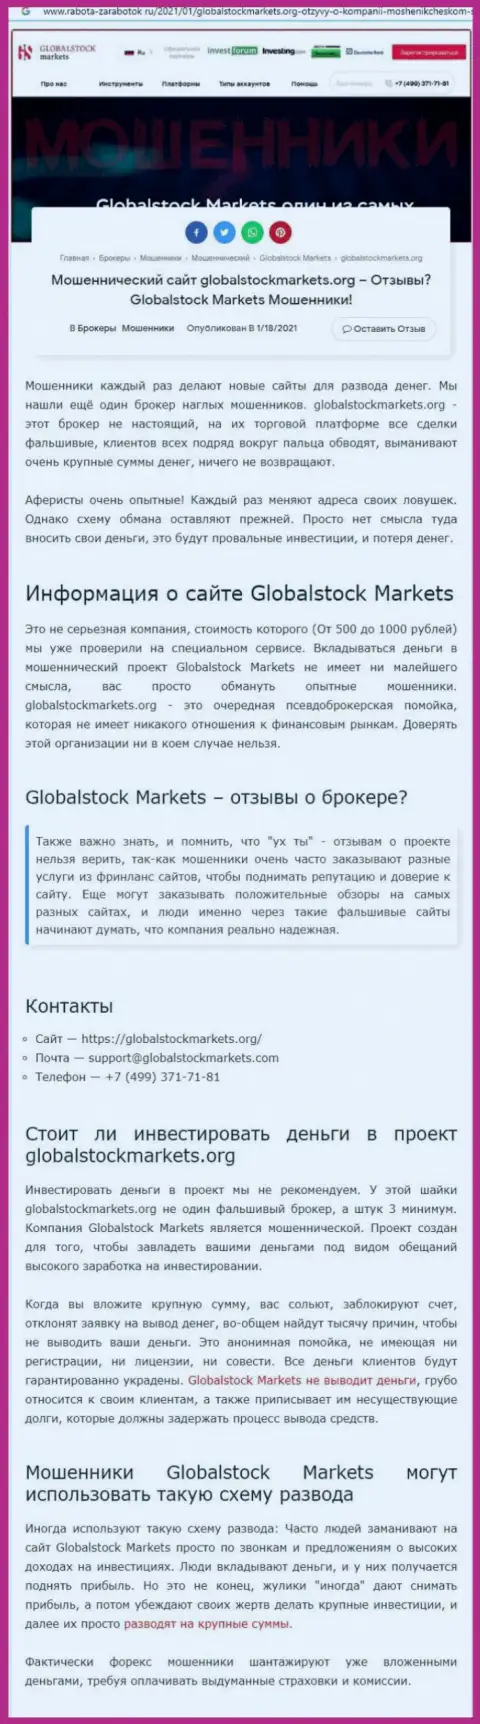 GlobalStockMarkets - это РАЗВОД НА ДЕНЬГИ ! ОСТОРОЖНО (статья с разбором